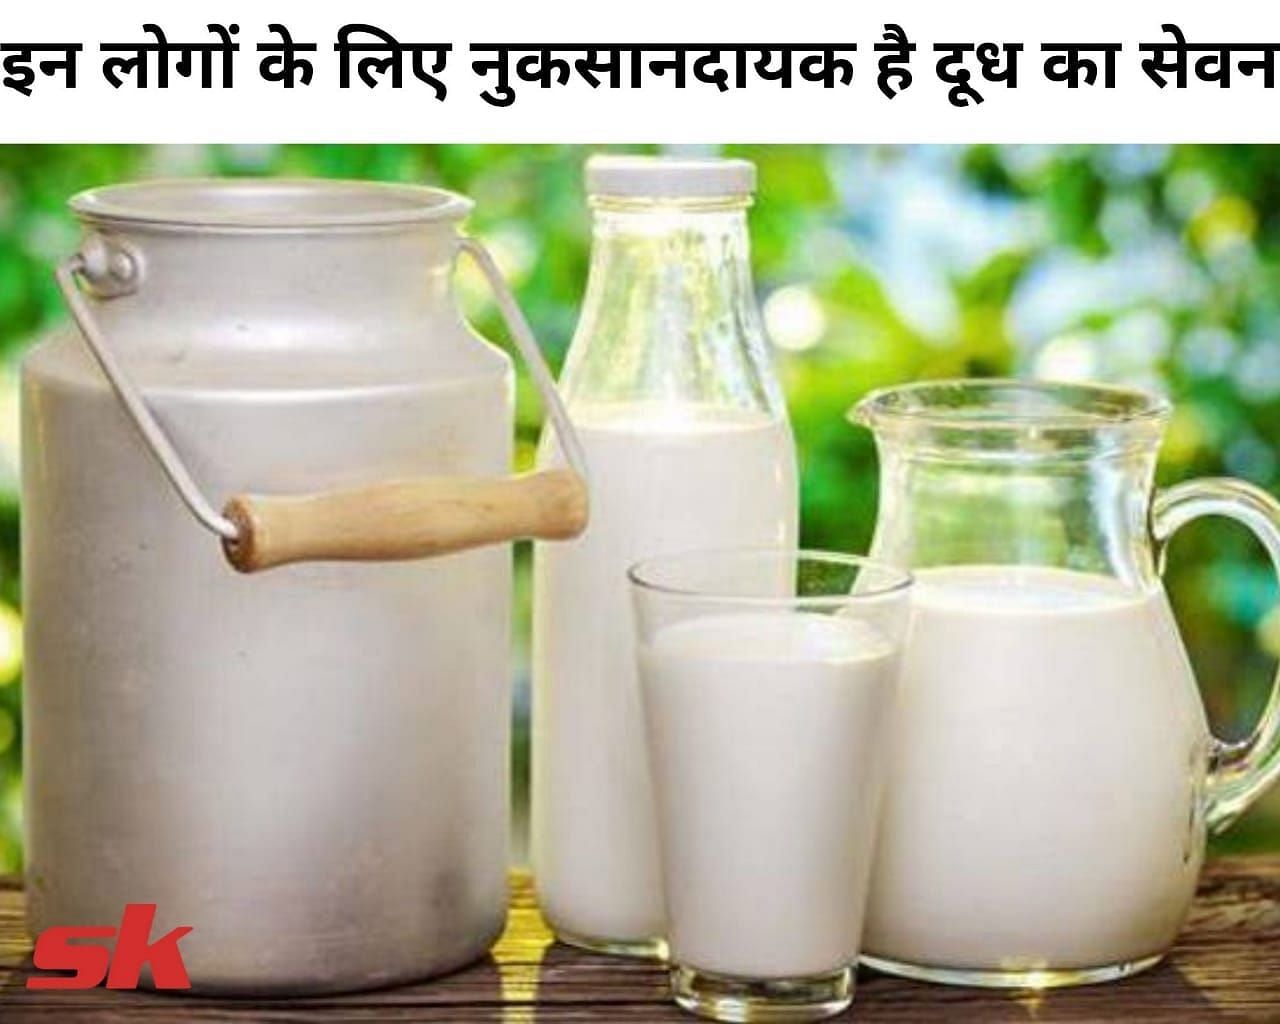 इन लोगों के लिए नुकसानदायक है दूध का सेवन (फोटो - sportskeeda hindi)